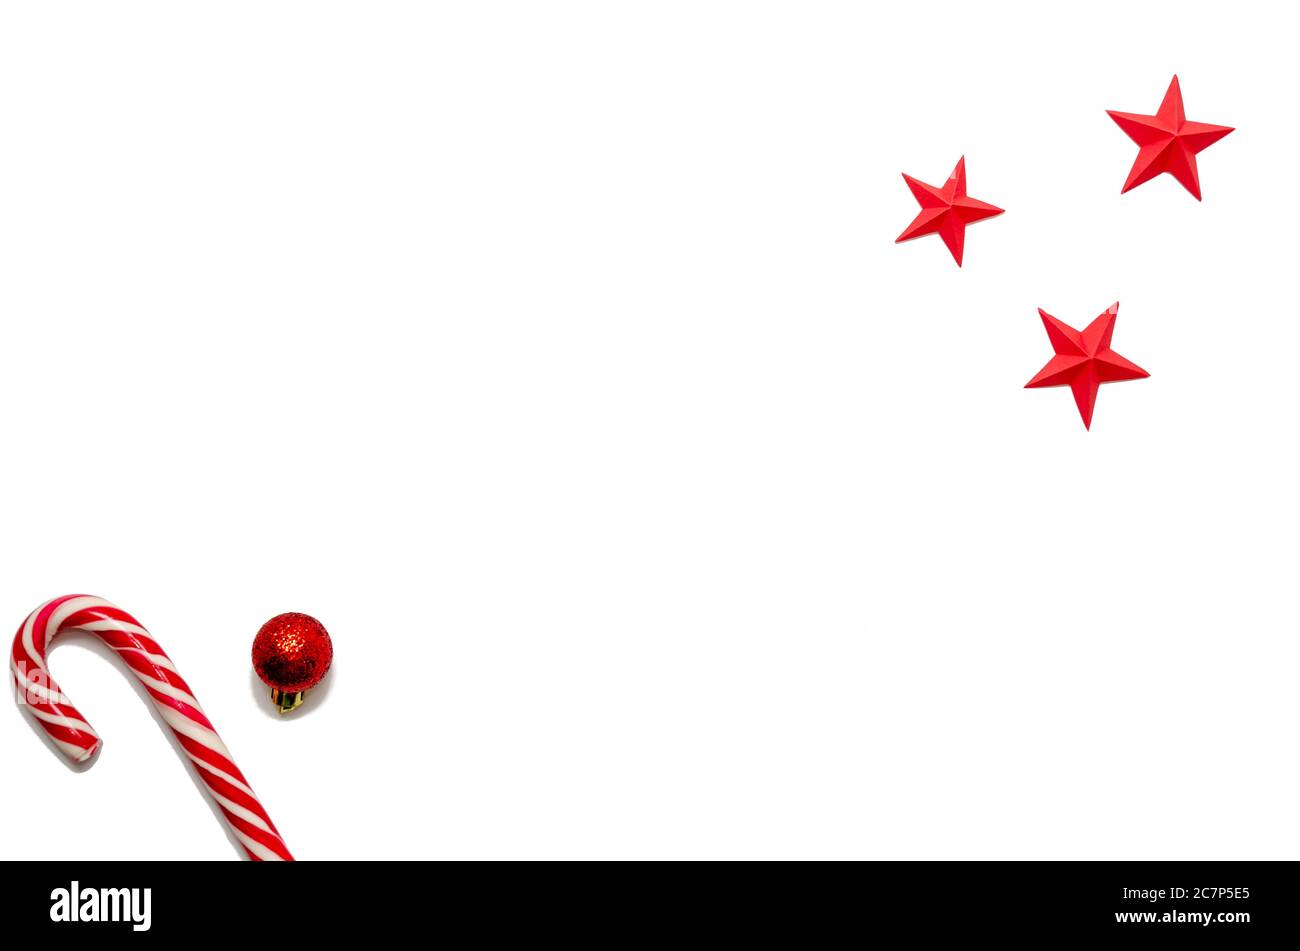 Noël et nouvel an composition minimale avec espace de copie en canne à sucre, boule de Noël rouge, étoiles sur fond blanc. Concept vacances d'hiver Banque D'Images